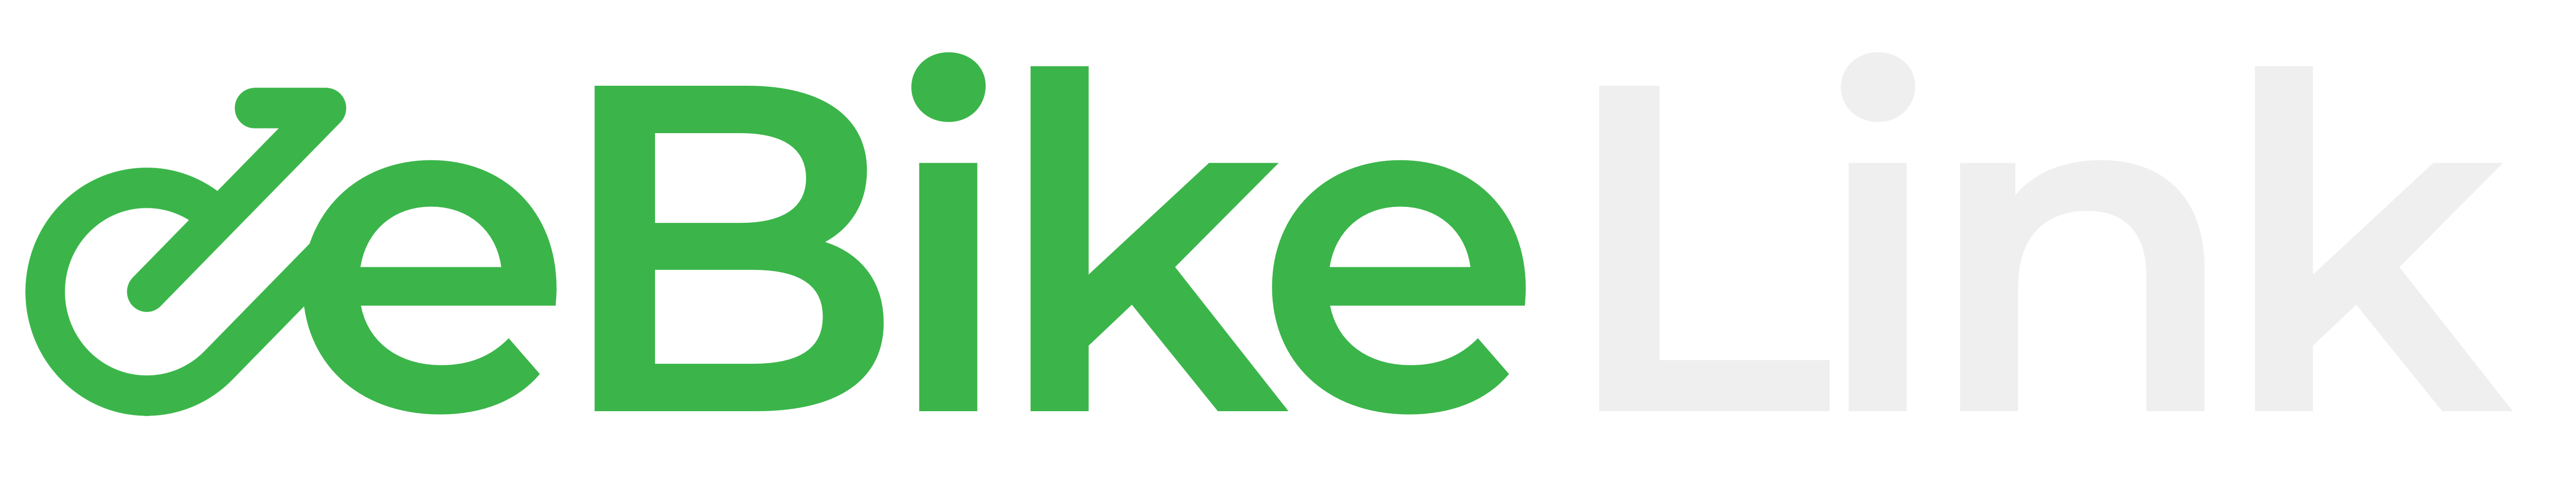 eBikeLink